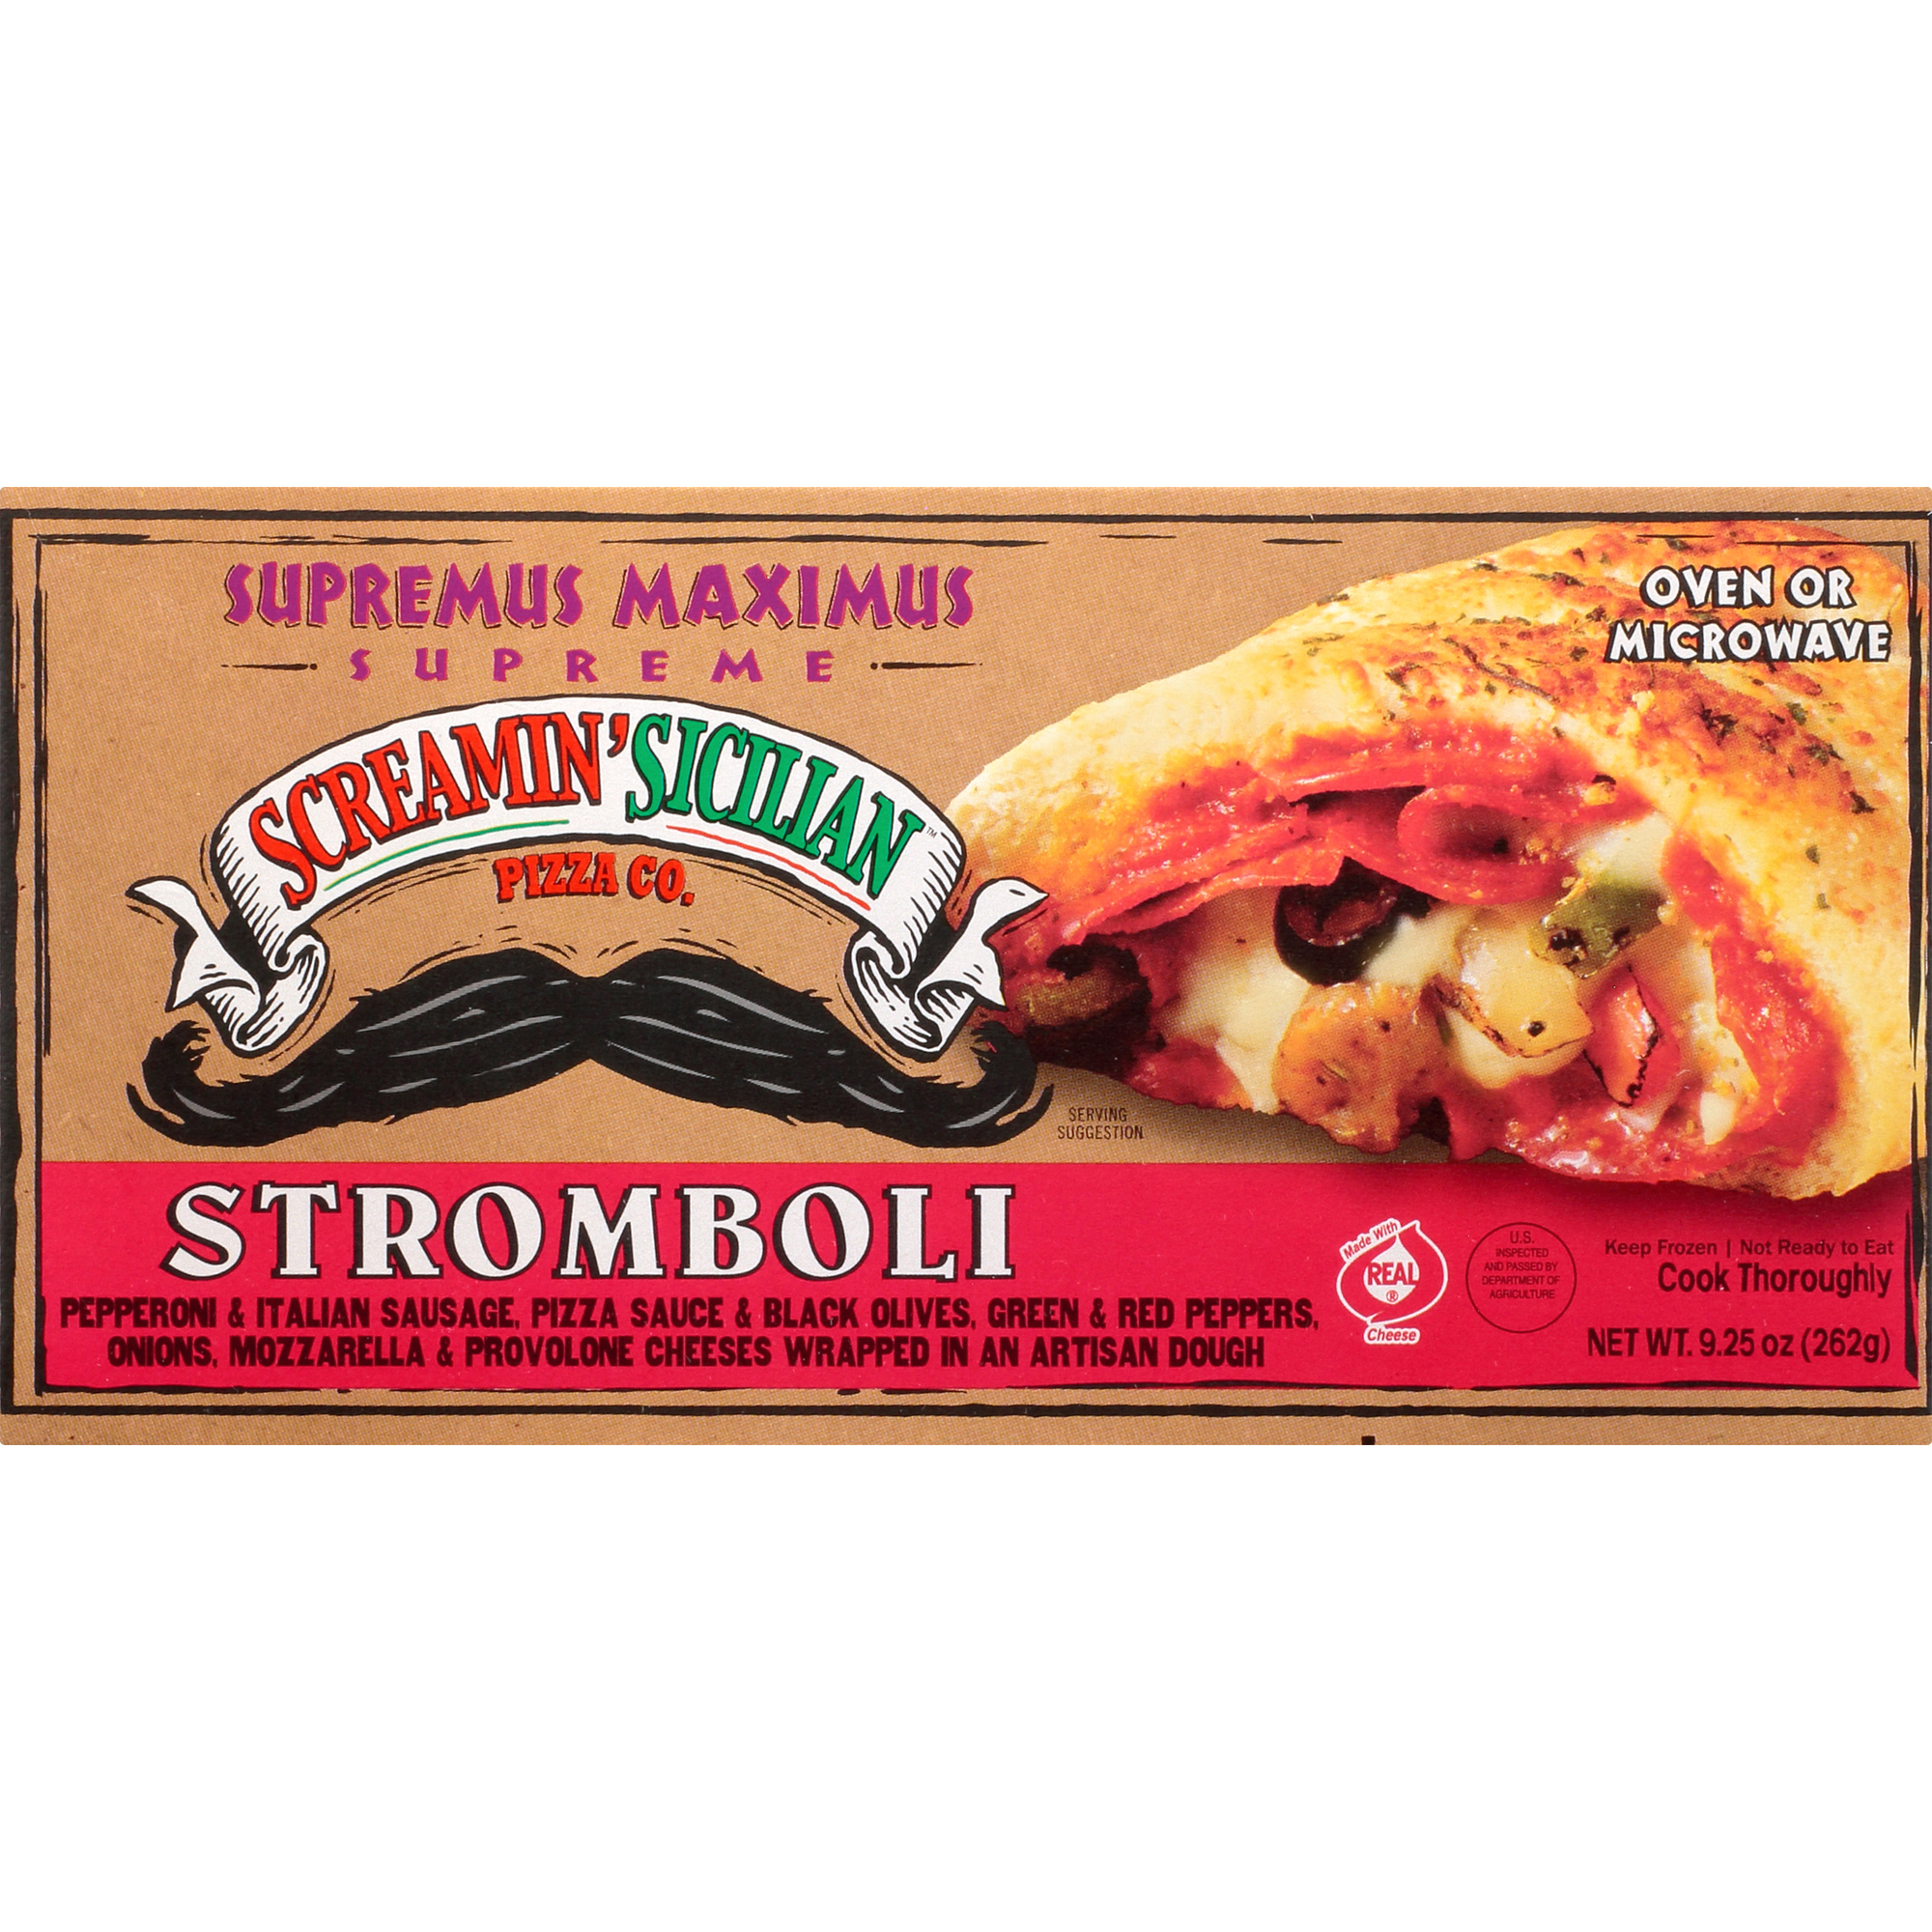 Screamin' Sicilian Supremus Maximus Stromboli (Supreme) 12 units per case 9.3 oz